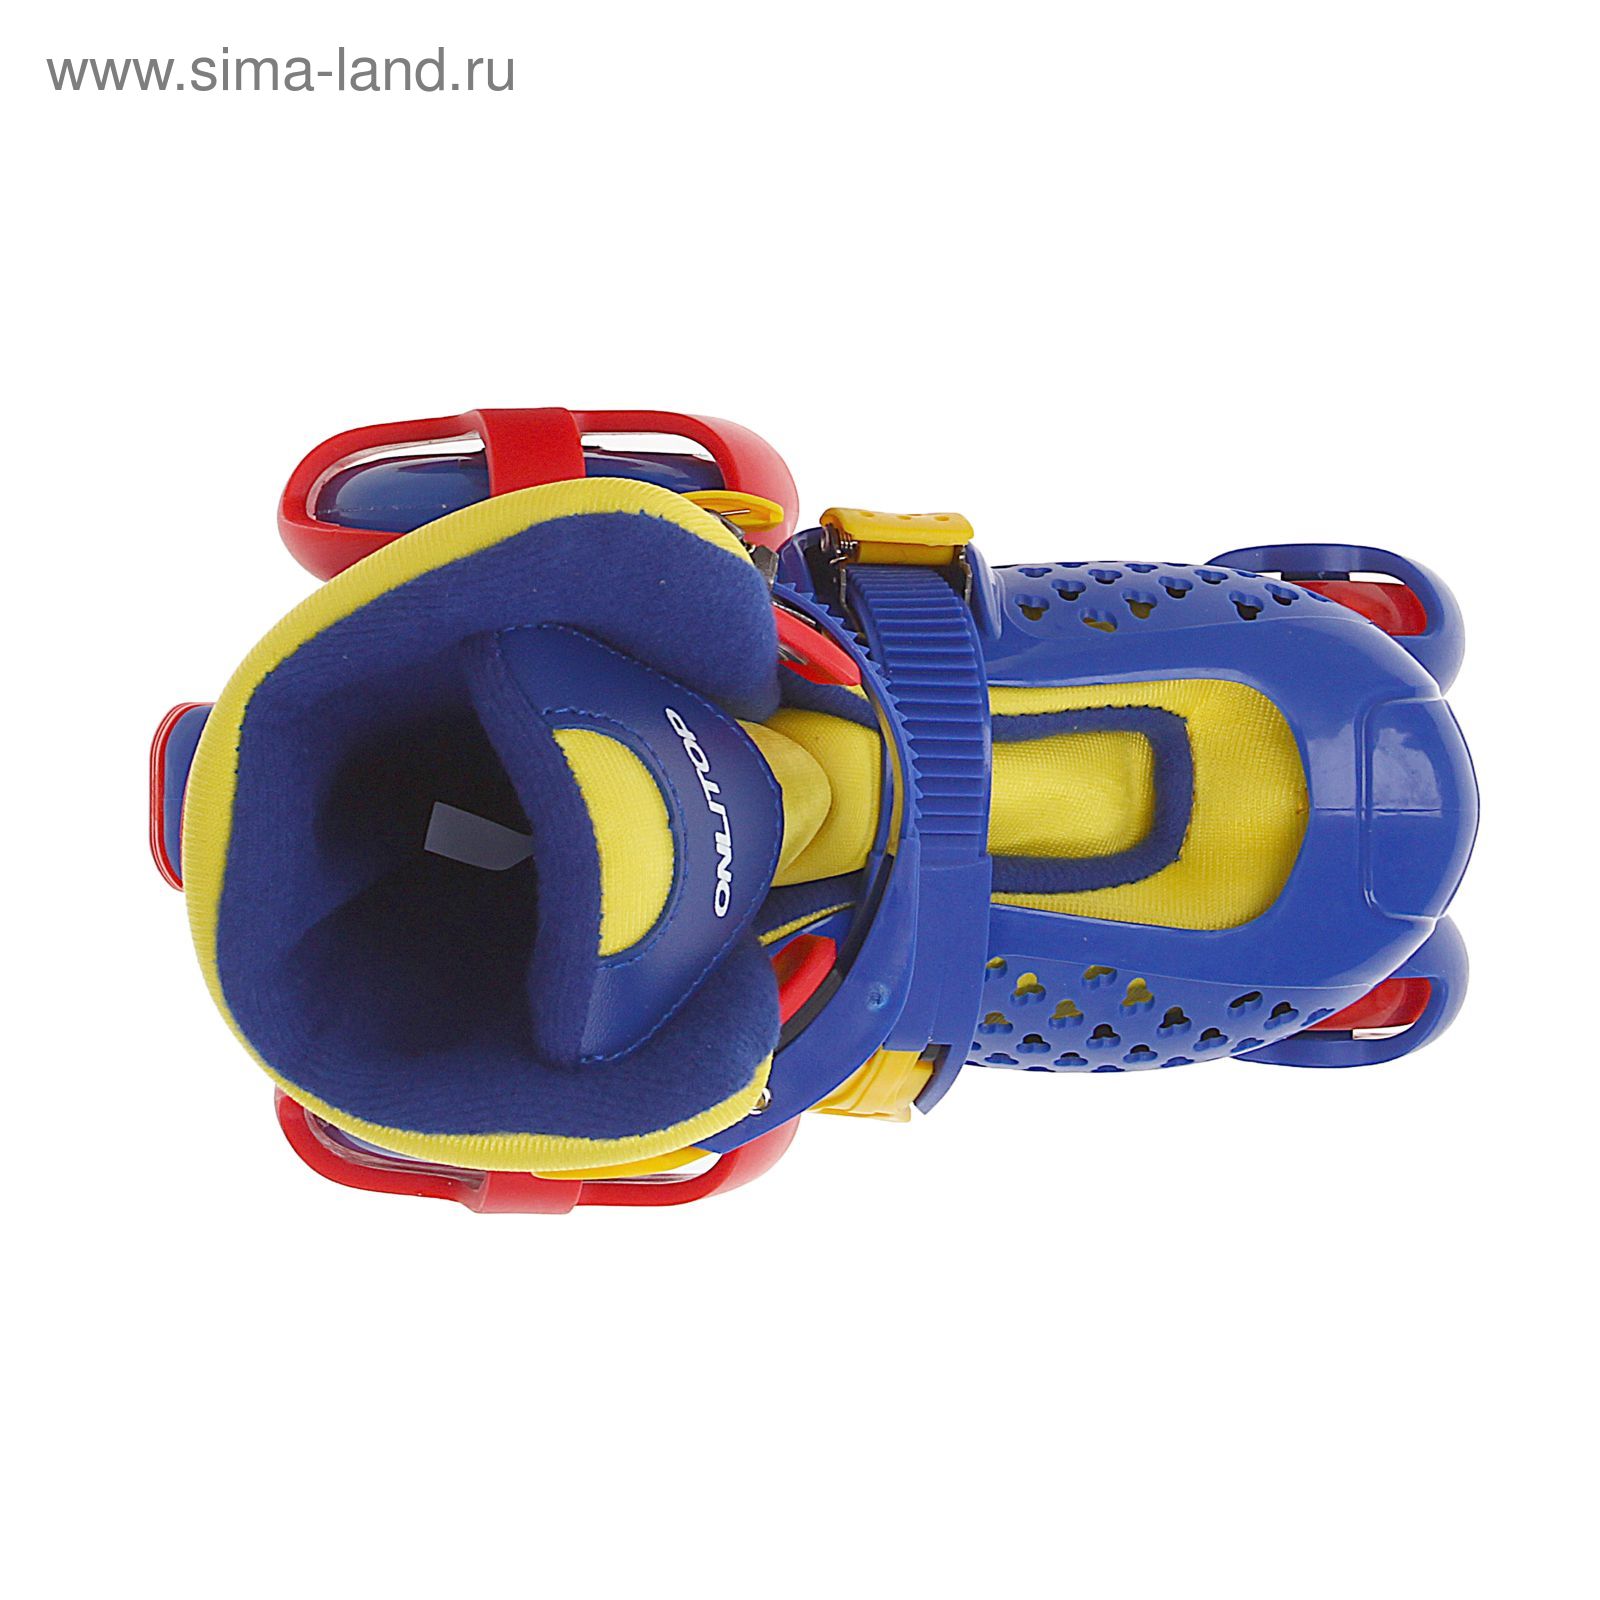 Раздвижные роликовые коньки, ABEC-7, размер 30-33, цвет синий с жёлтым